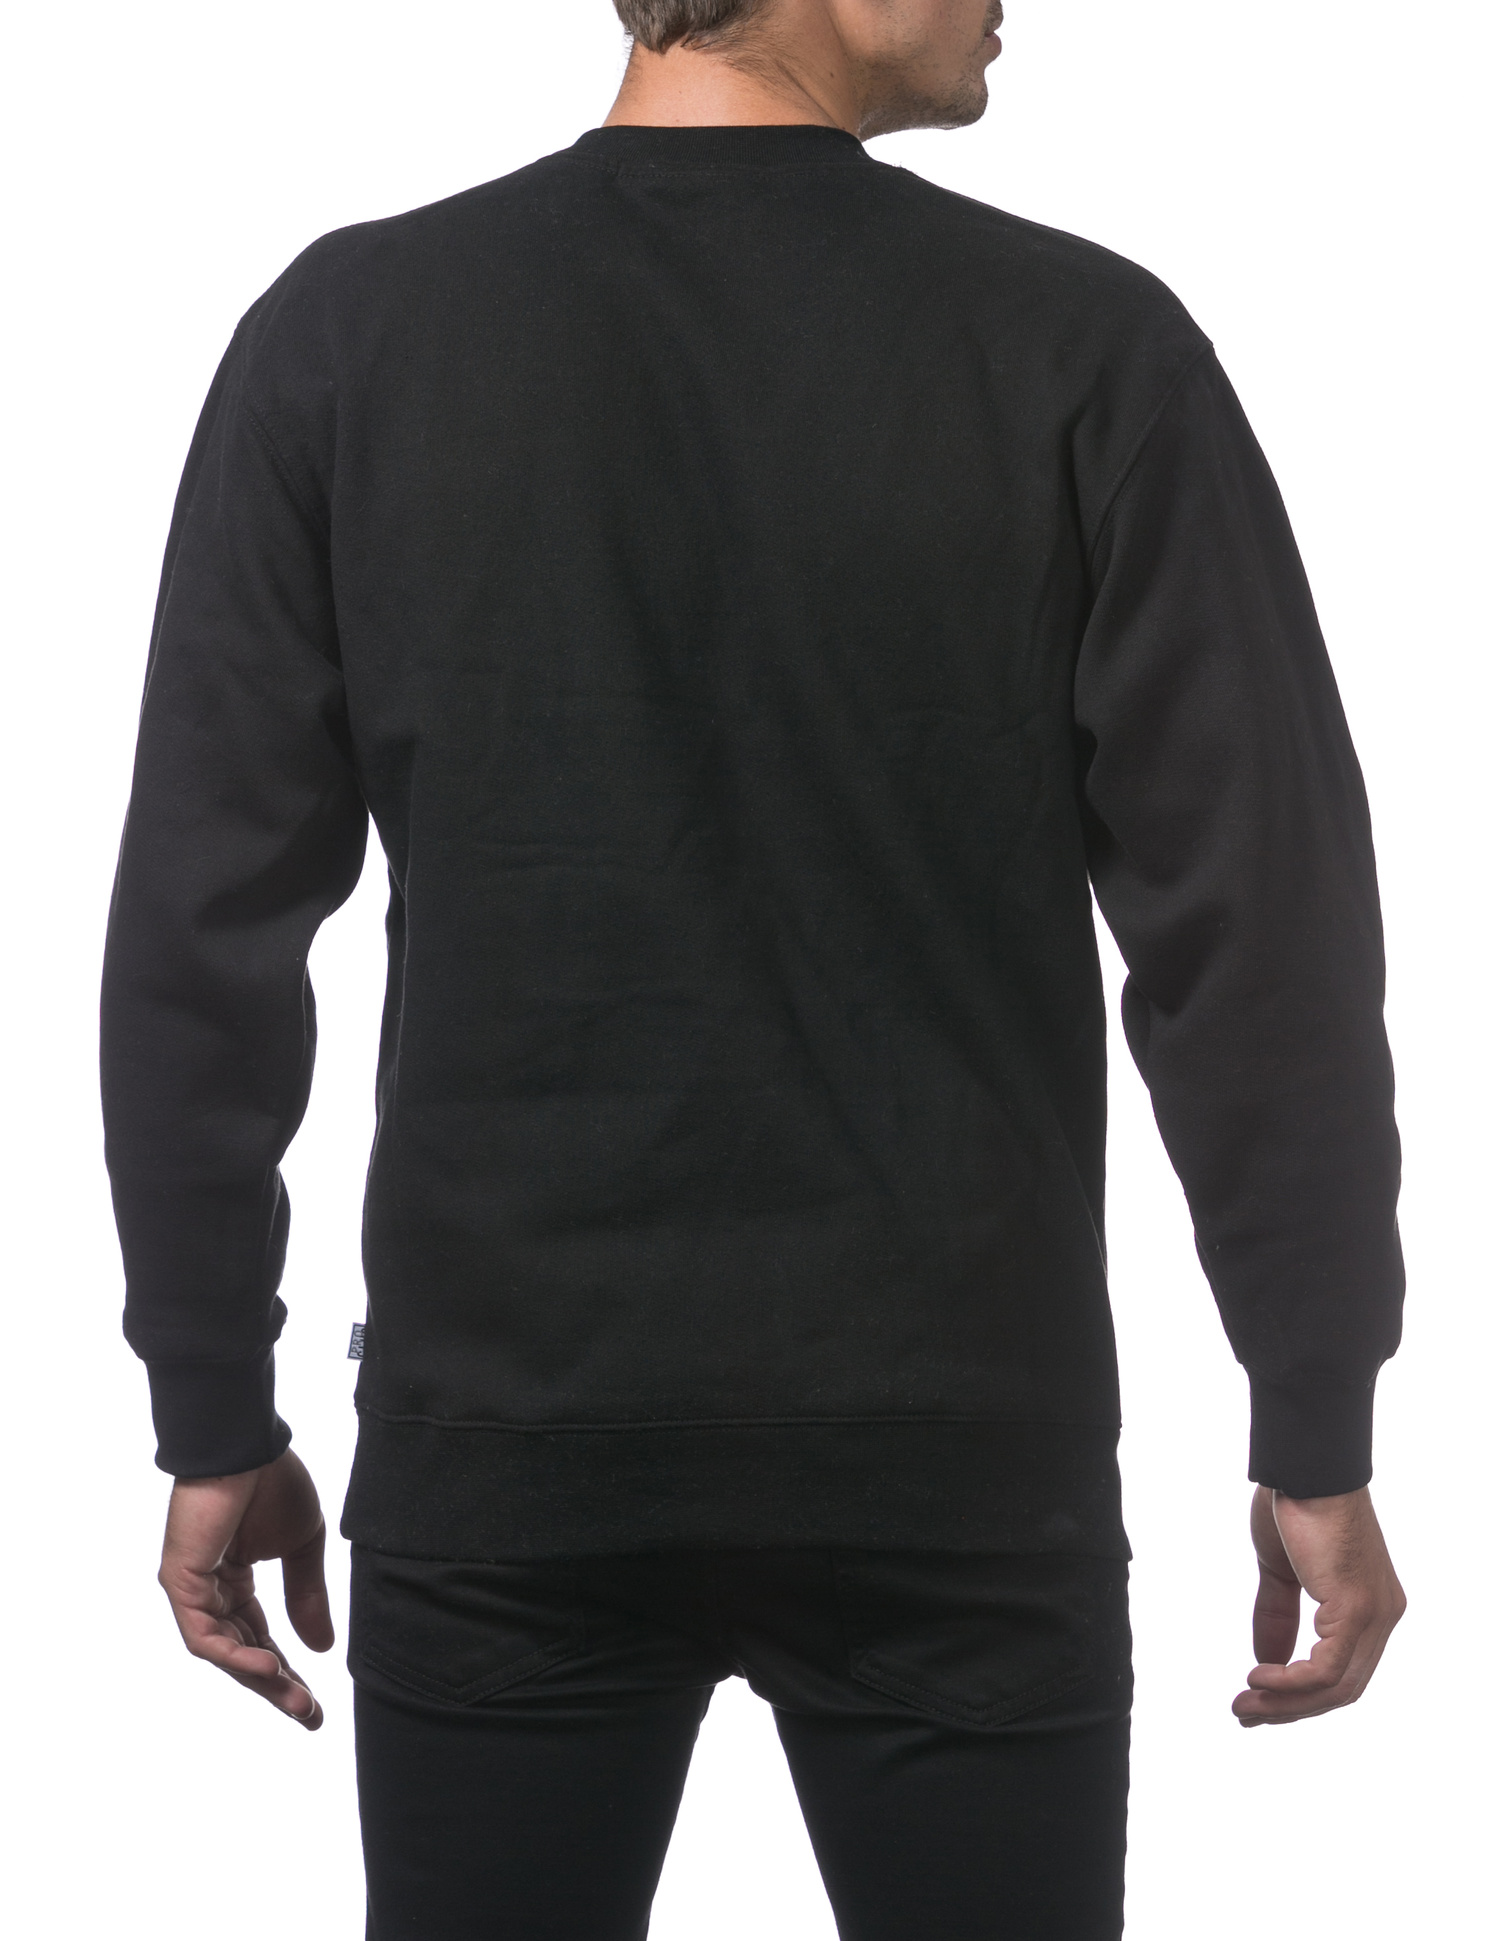 138 BLACK Comfort Crew Neck Fleece Pullover Sweater (9oz)